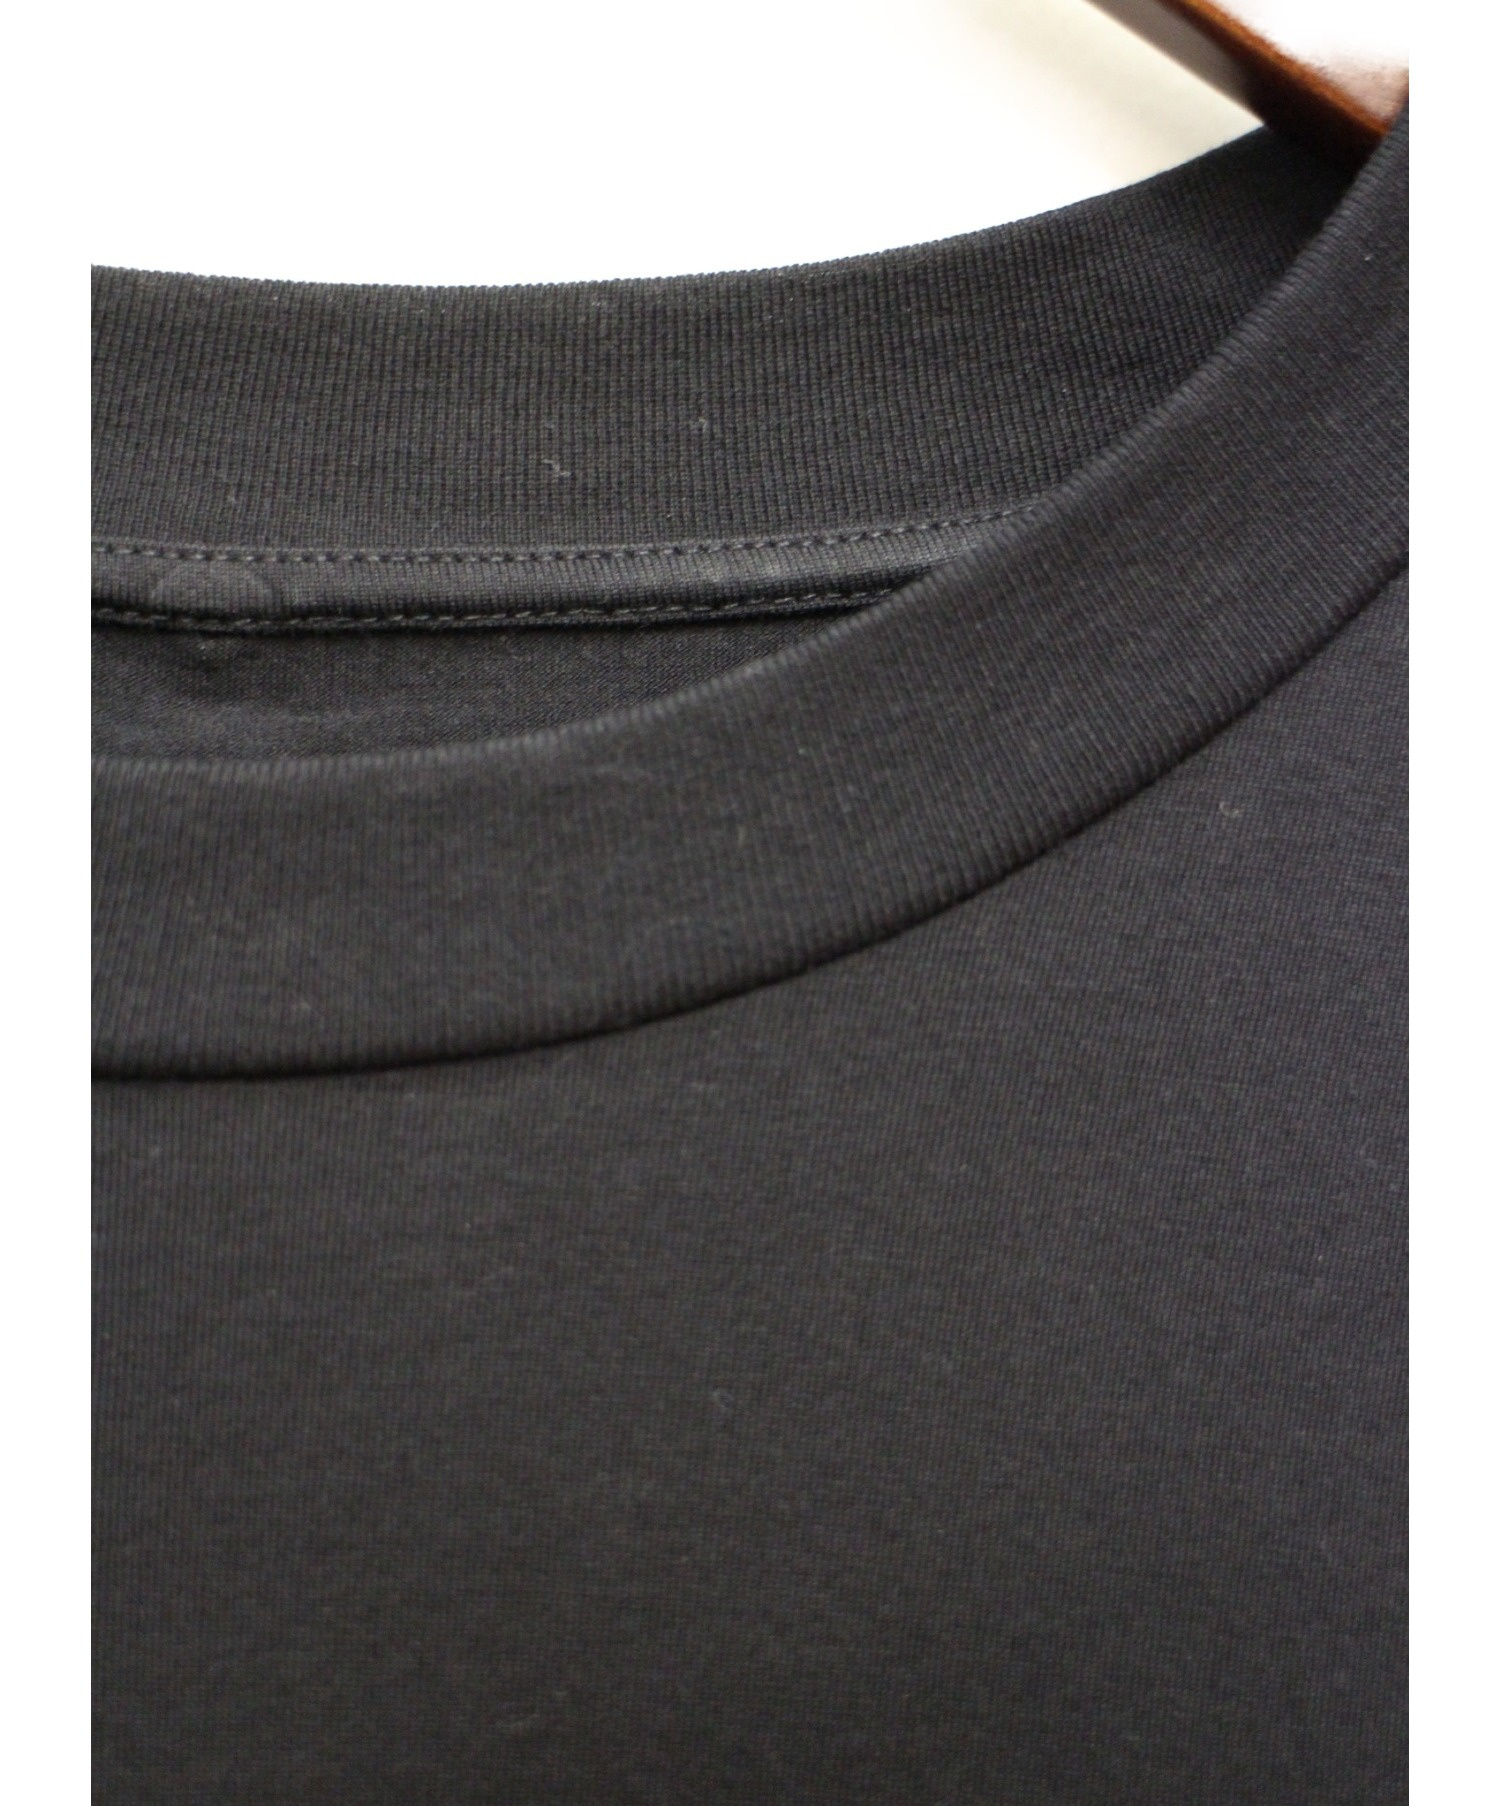 Maison Margiela (メゾンマルジェラ) 20SS オーバーサイズナンバーロゴTシャツ ブラック サイズ:52